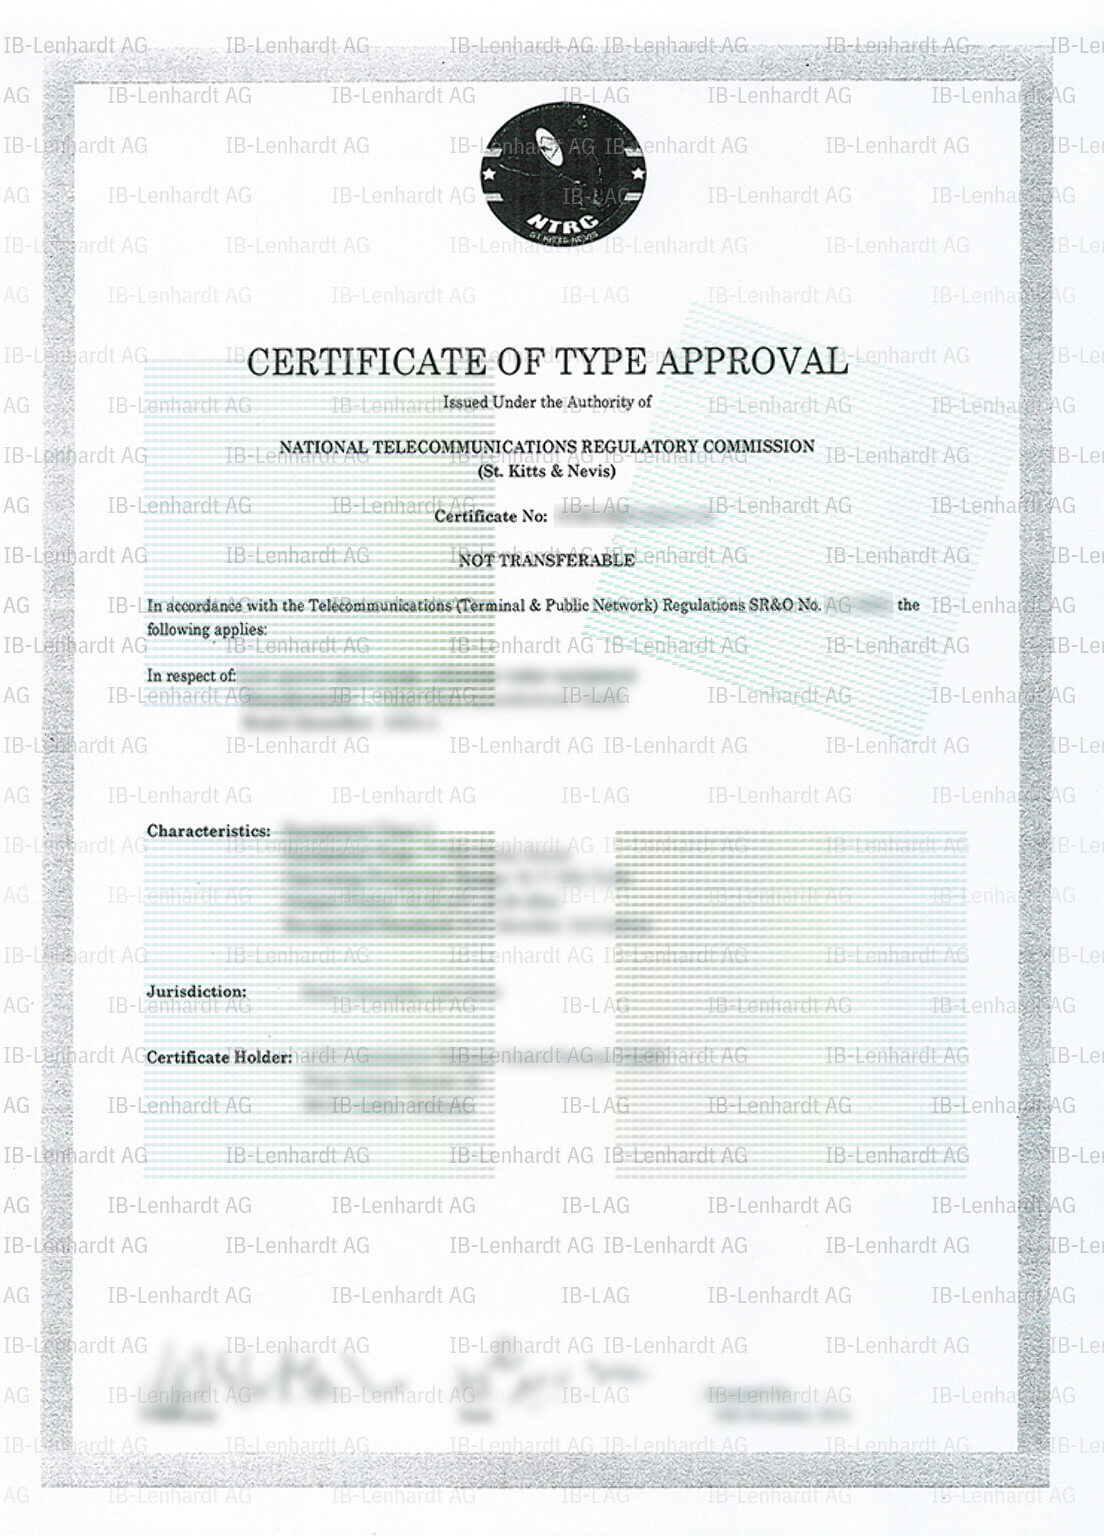 Zertifikats-Beispiel Sankt Christopher und Nevis